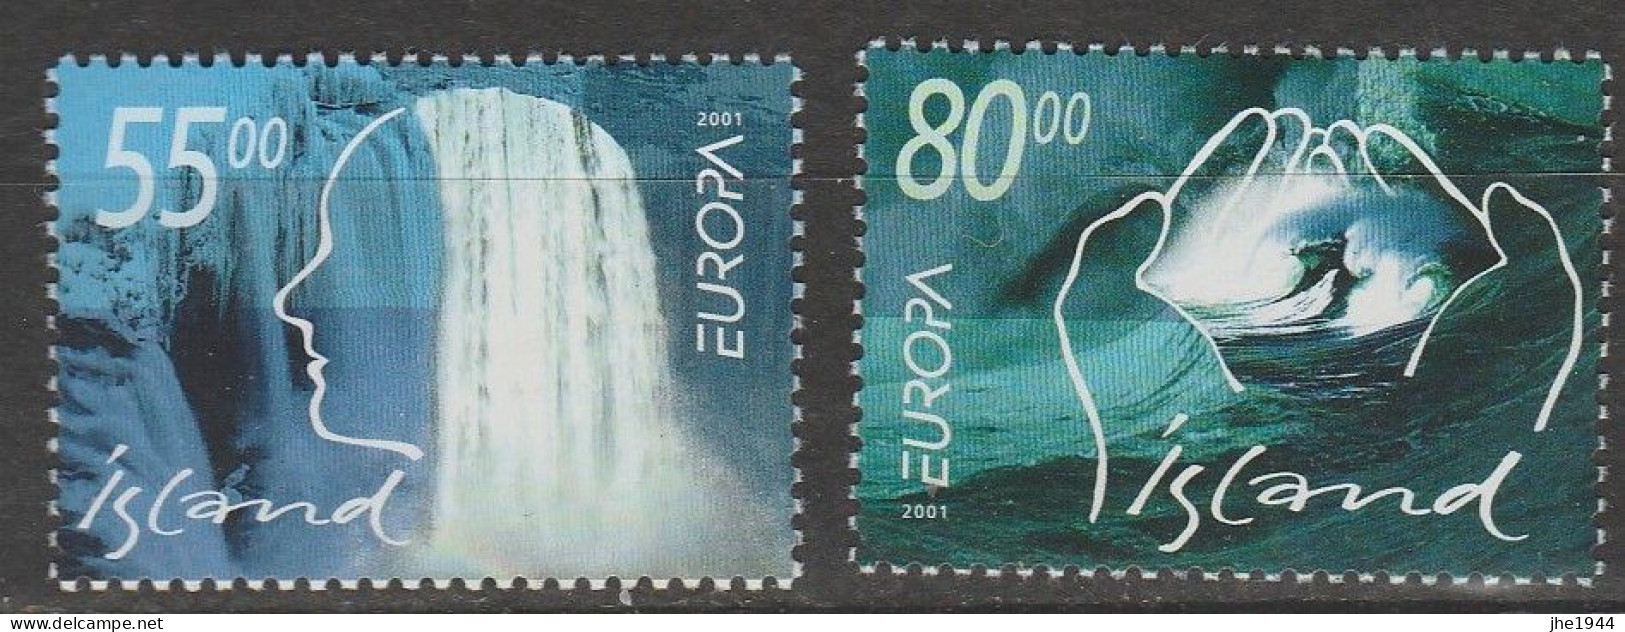 Europa 2001 L'eau, richesse naturelle Voir liste des timbres à vendre **